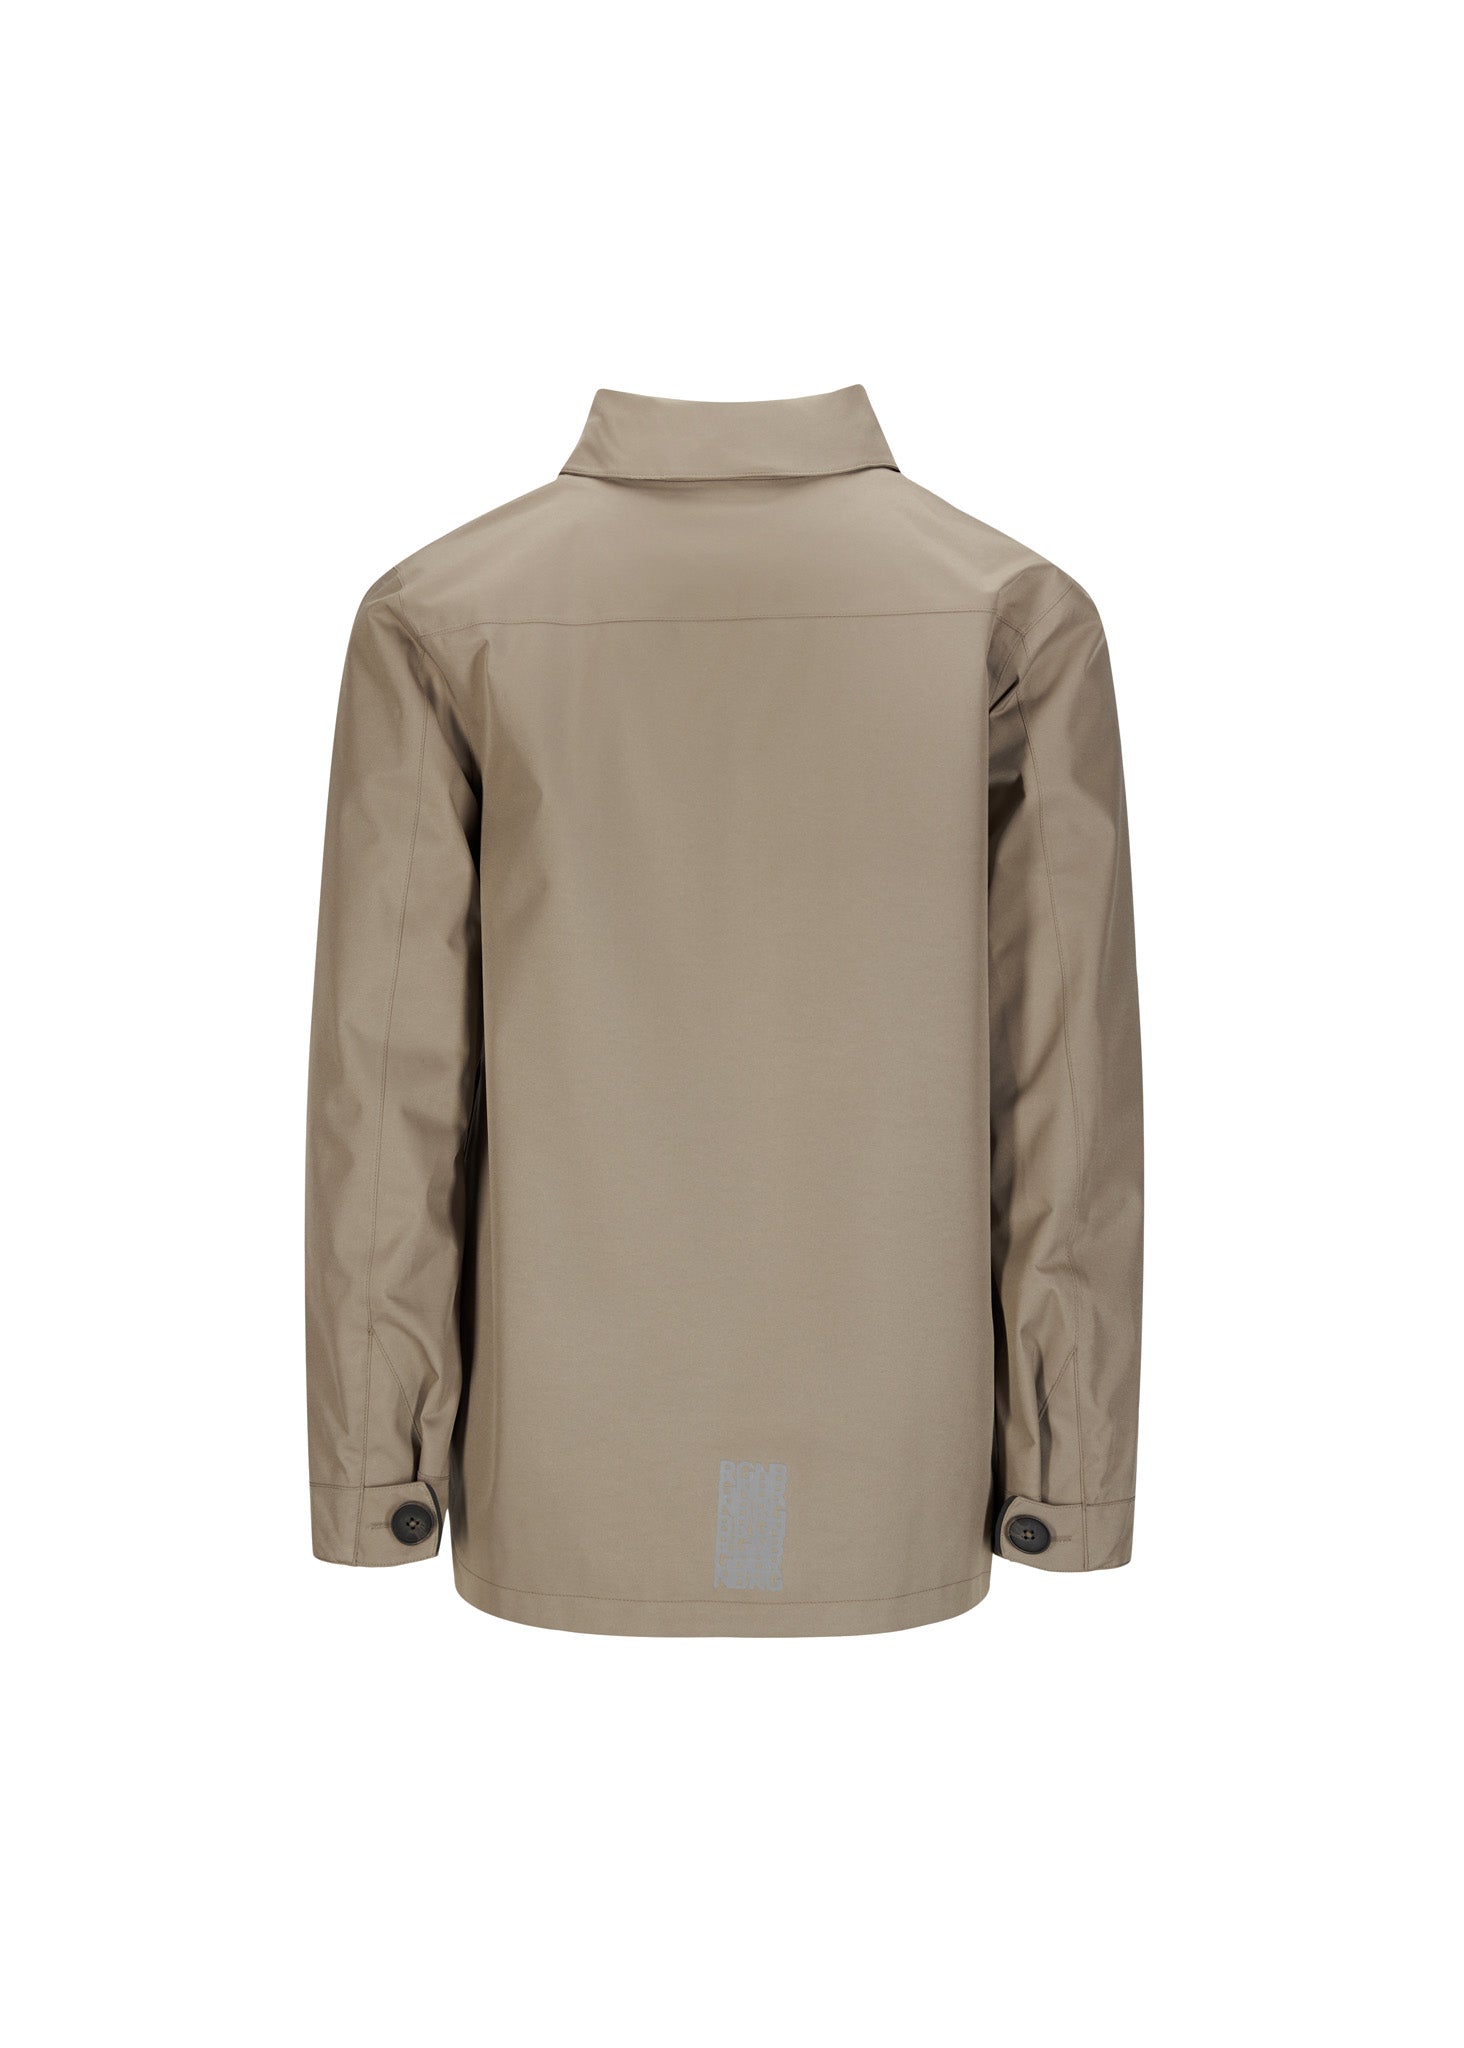 BRGN by Lunde & Gaundal Syklon Overshirt Jacket Coats 141 Taupe